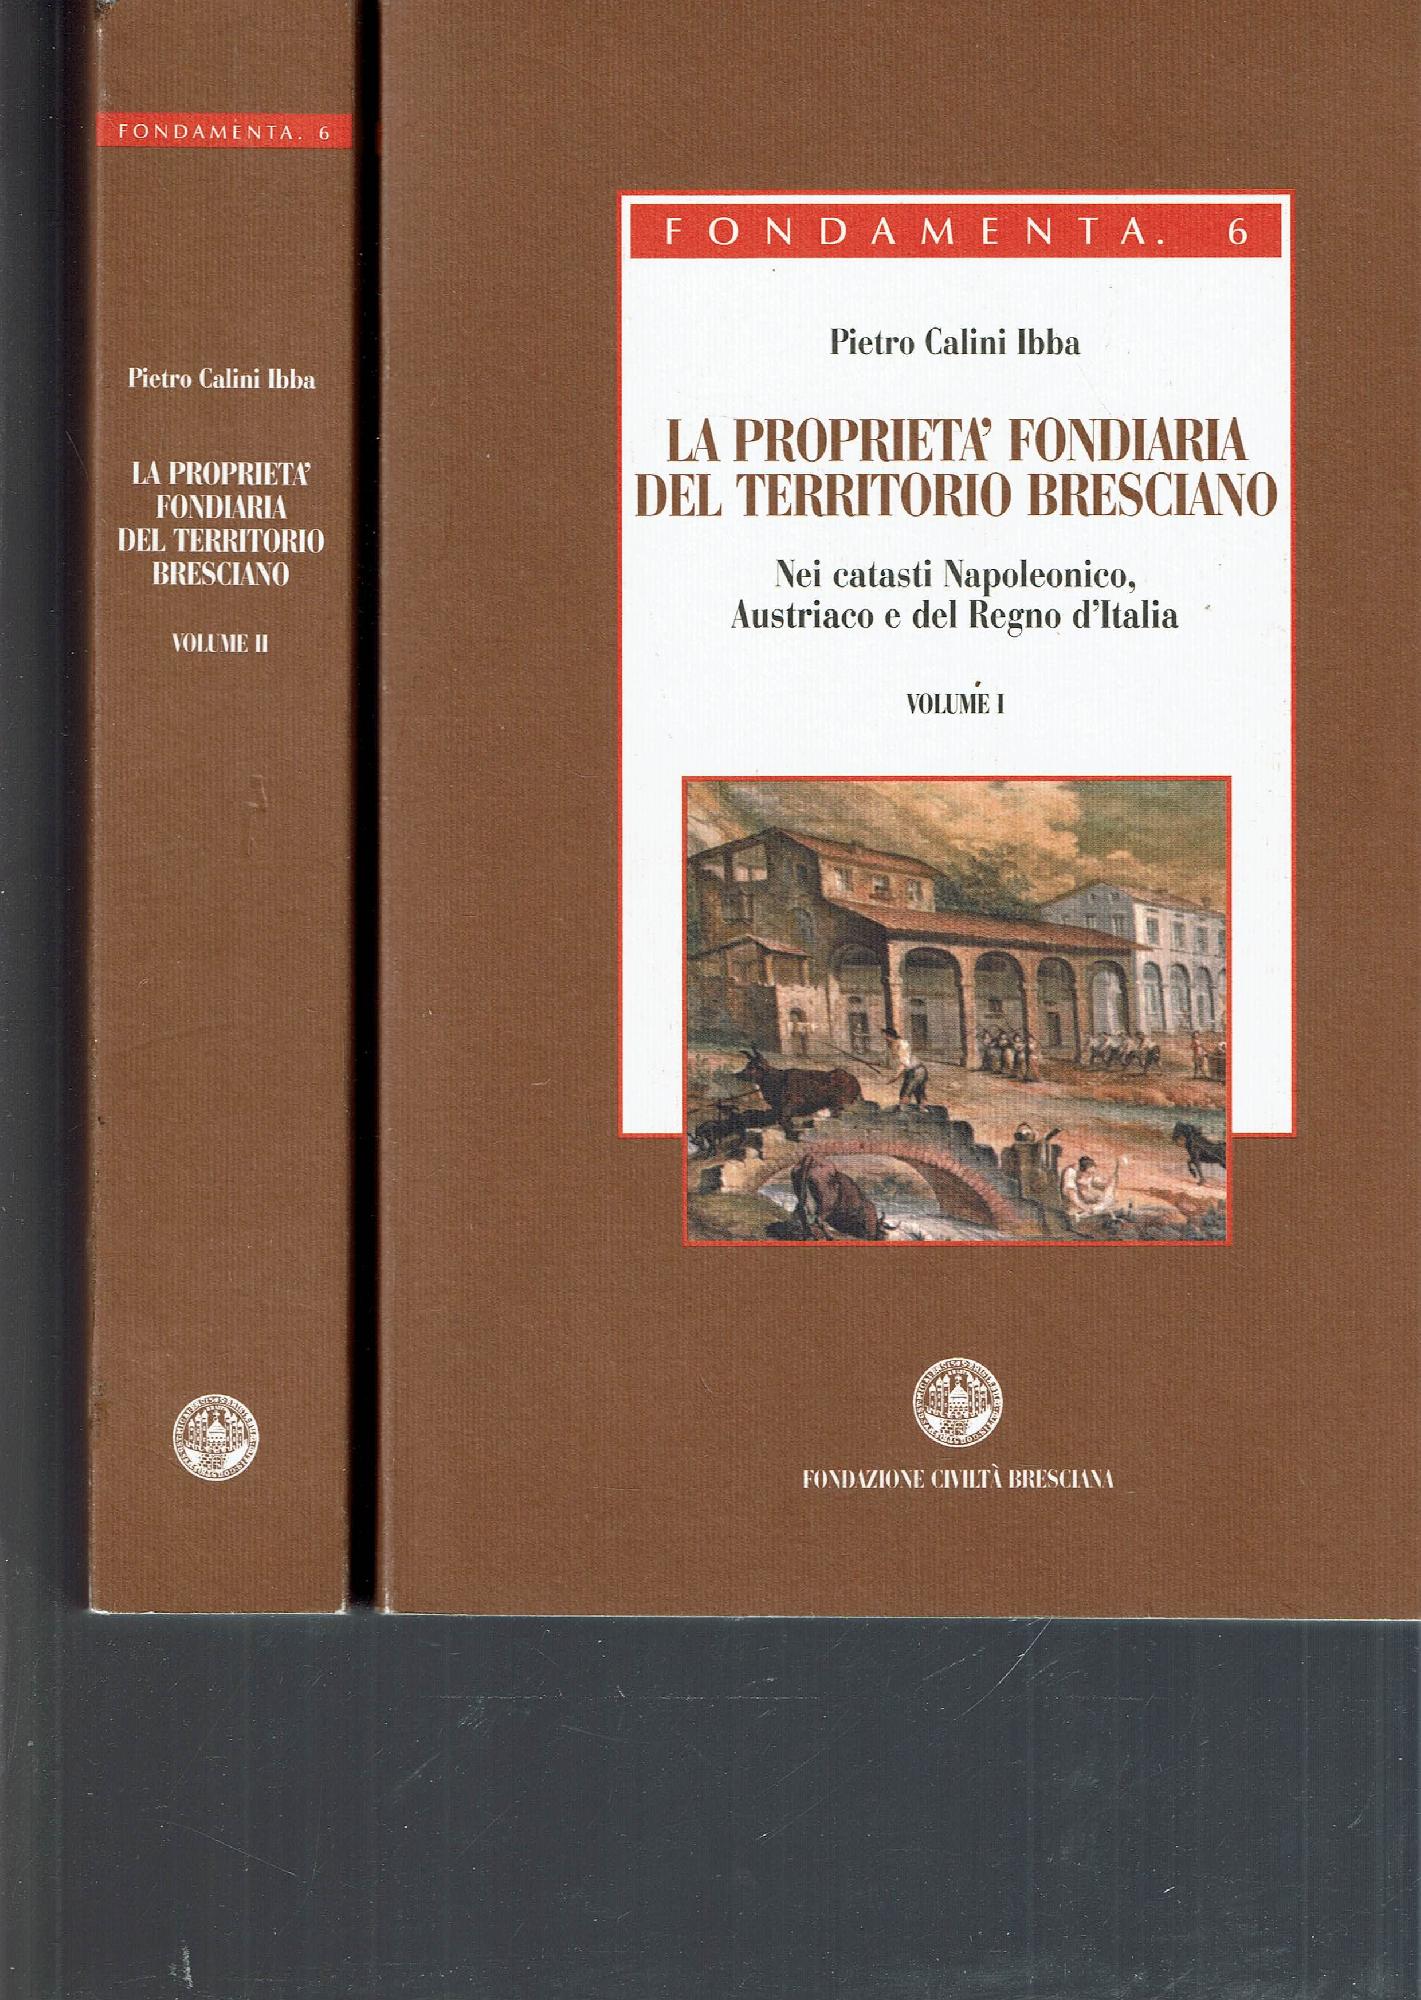 La proprieta fondiaria del territorio bresciano : nei catasti Napoleonico, Austriaco e del Regno d'Italia - Calini Ibba, Pietro